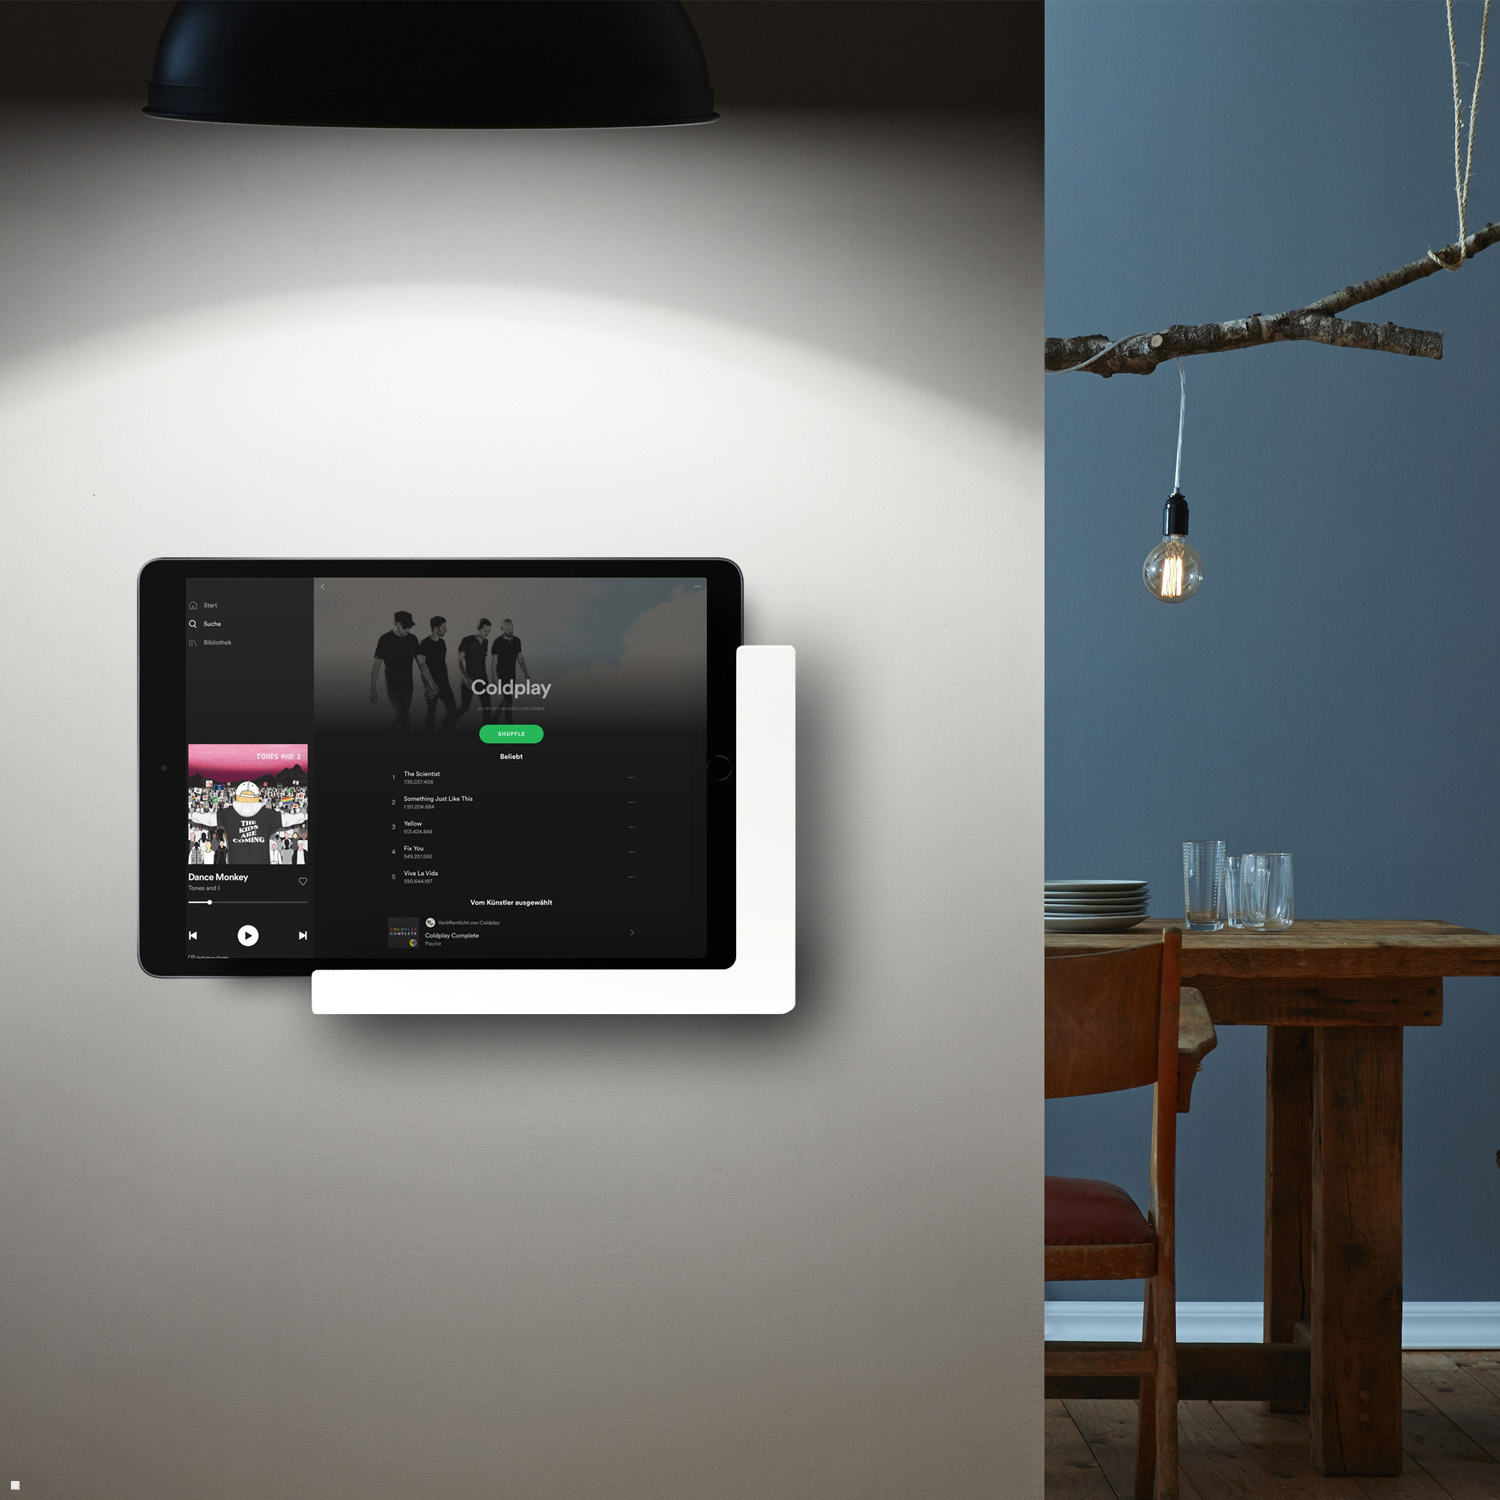 TABLINES TWP 9.7 Air Tablet Apple für Wandhalterung, schwarz 1 Ladefunktion mit